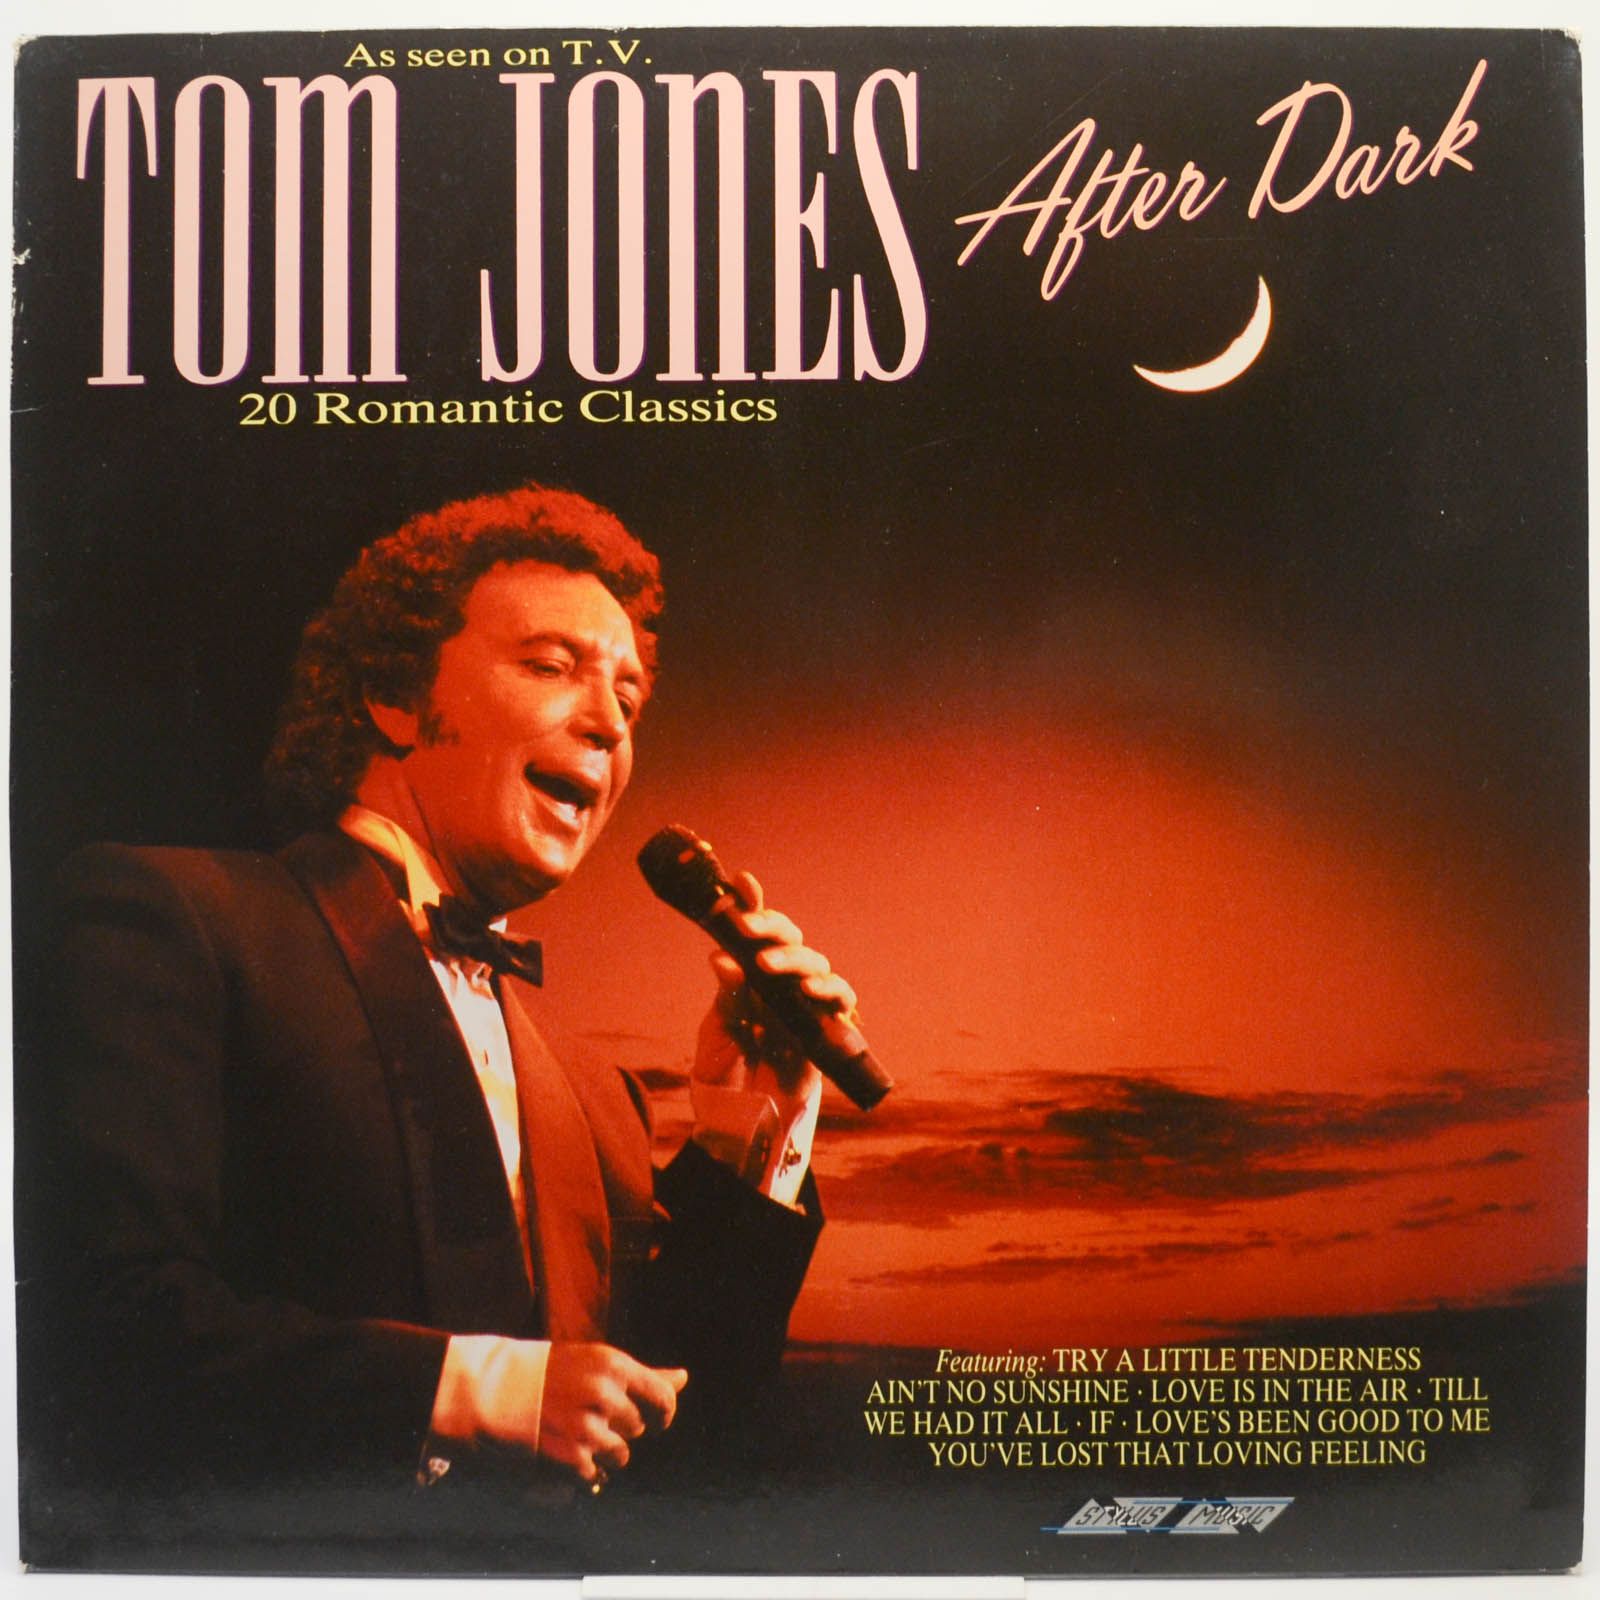 Tom Jones — After Dark (UK), 1989